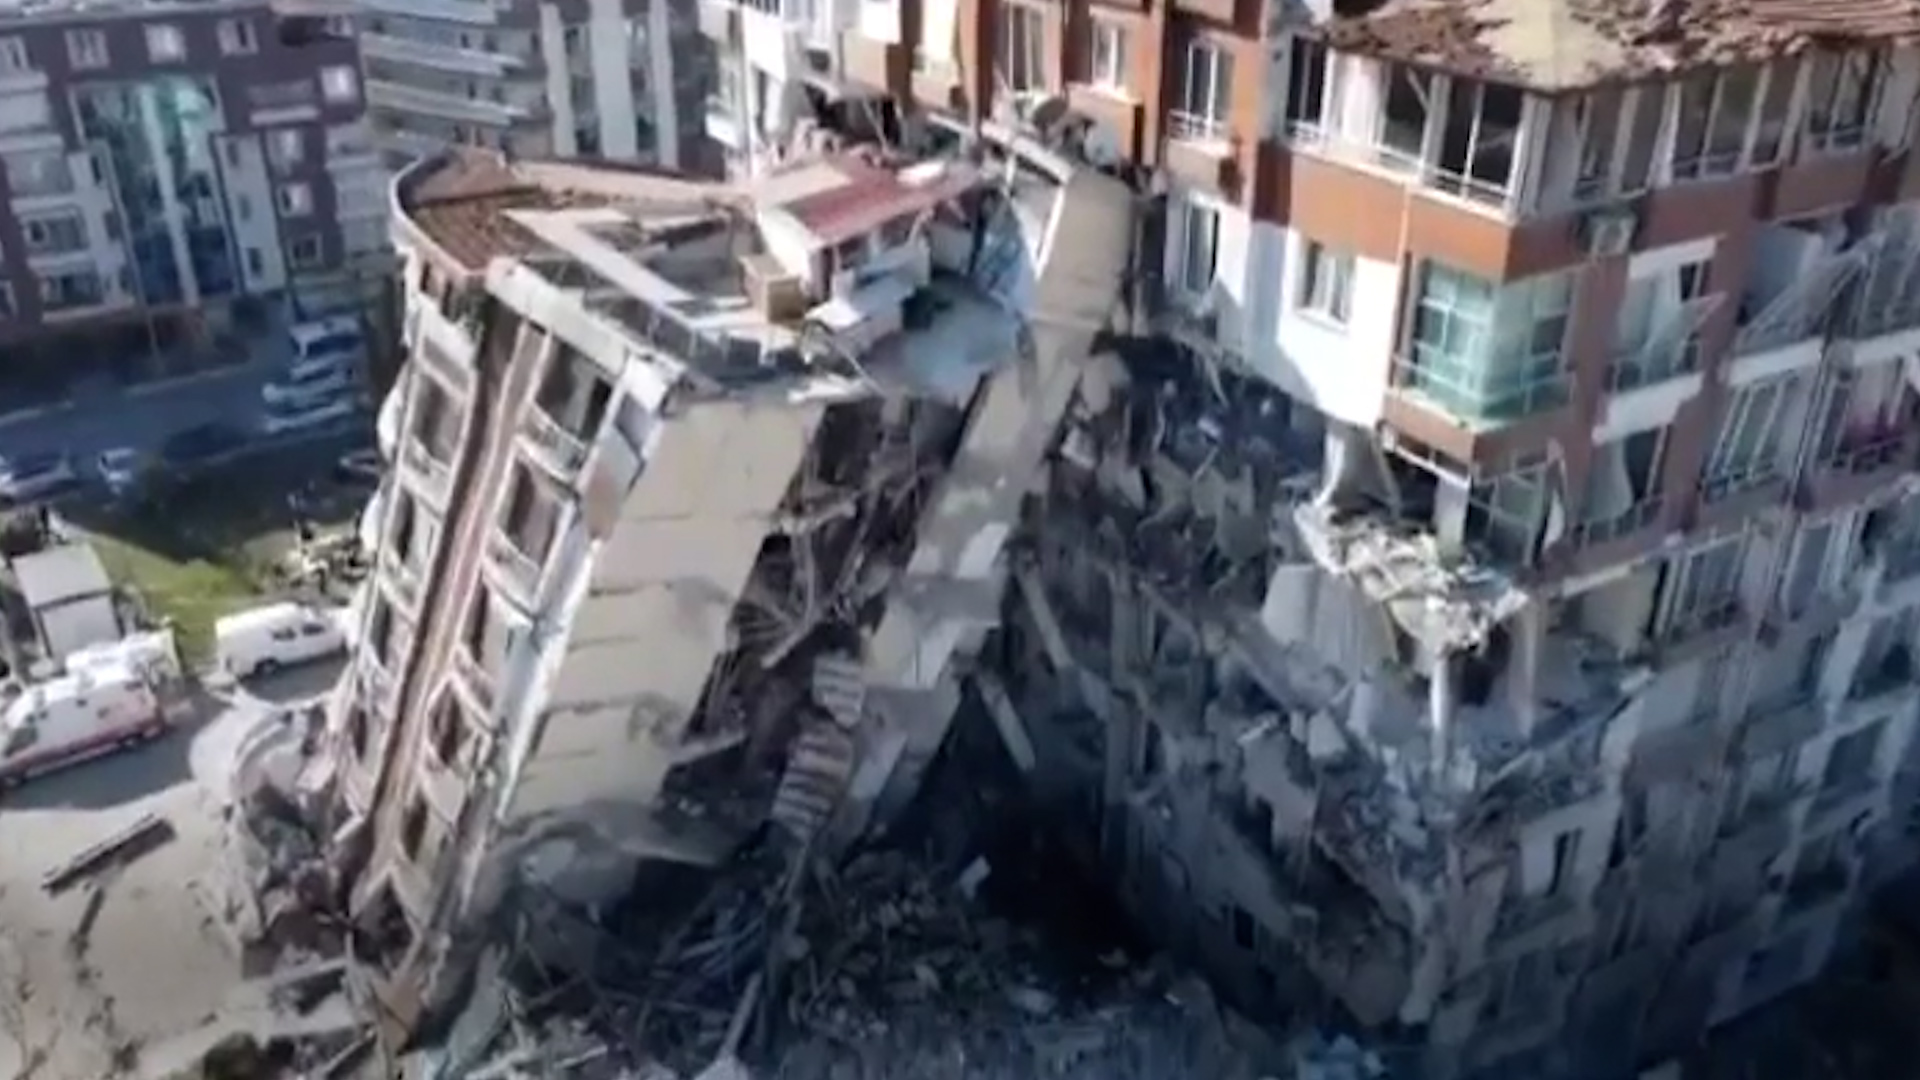 La supervivencia bajo los escombros de Turquía disminuye tras más de 100 horas